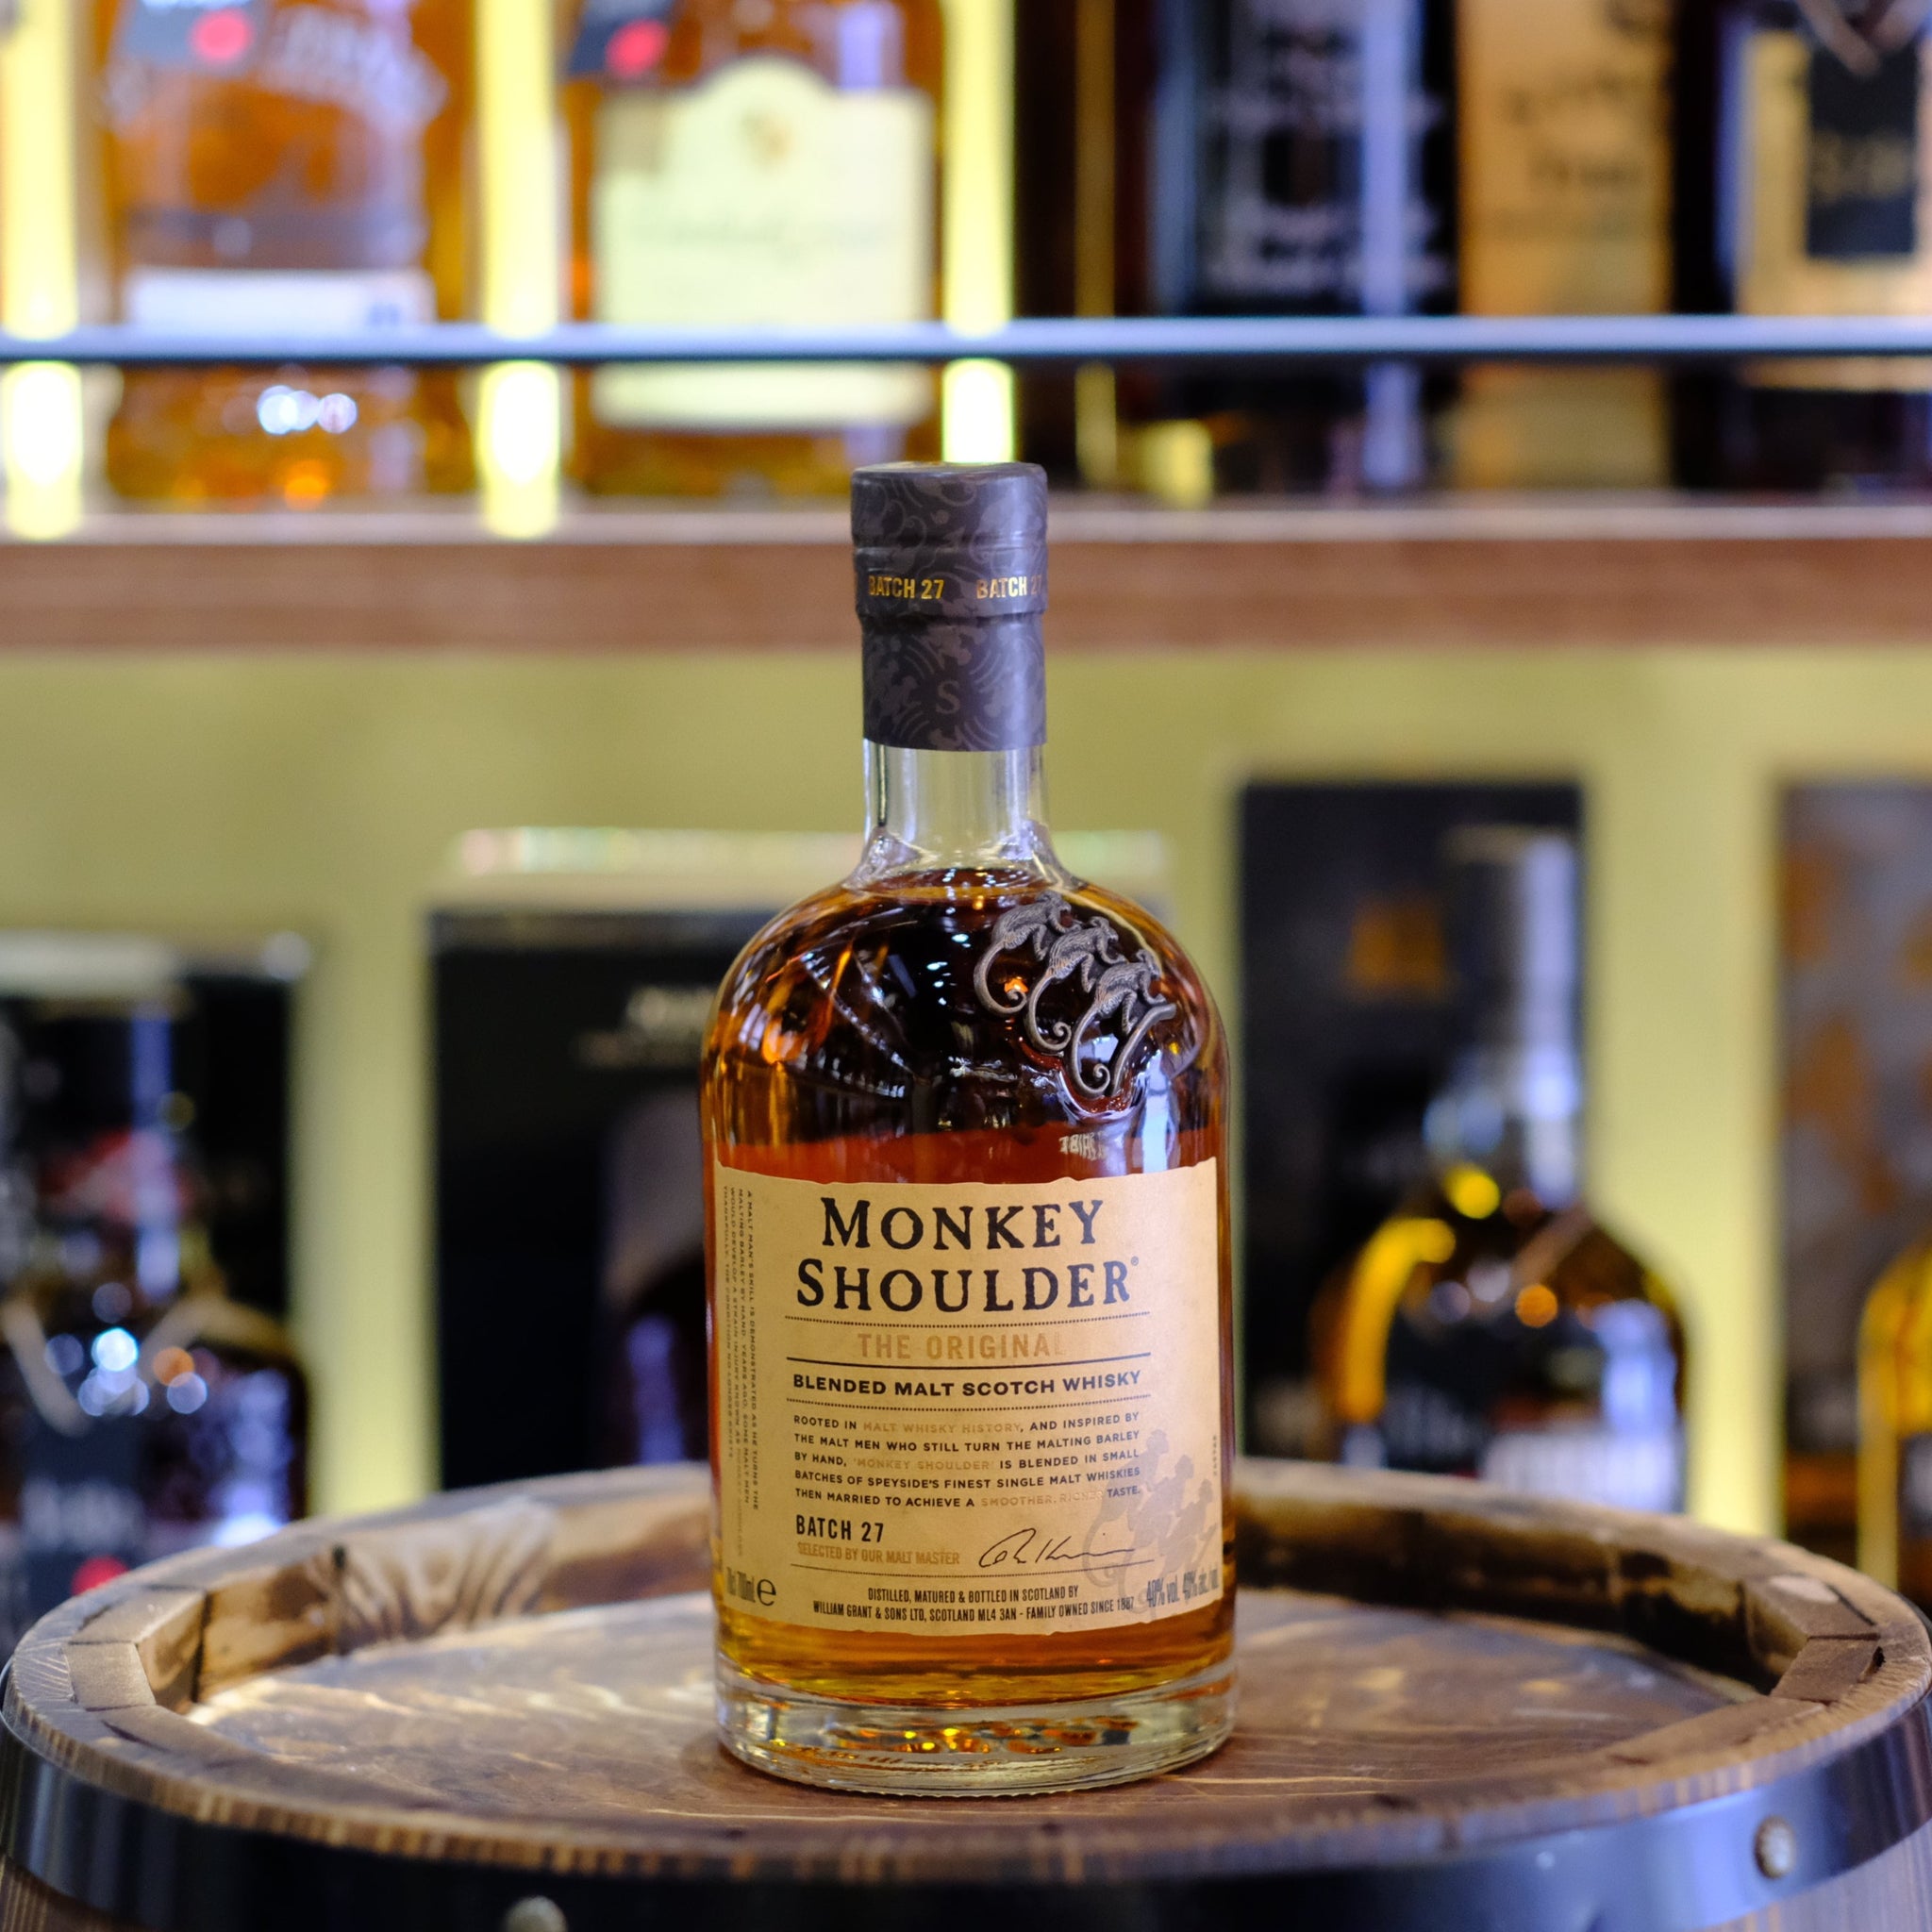 Monkey Shoulder Blended Malt Scotch Whisky